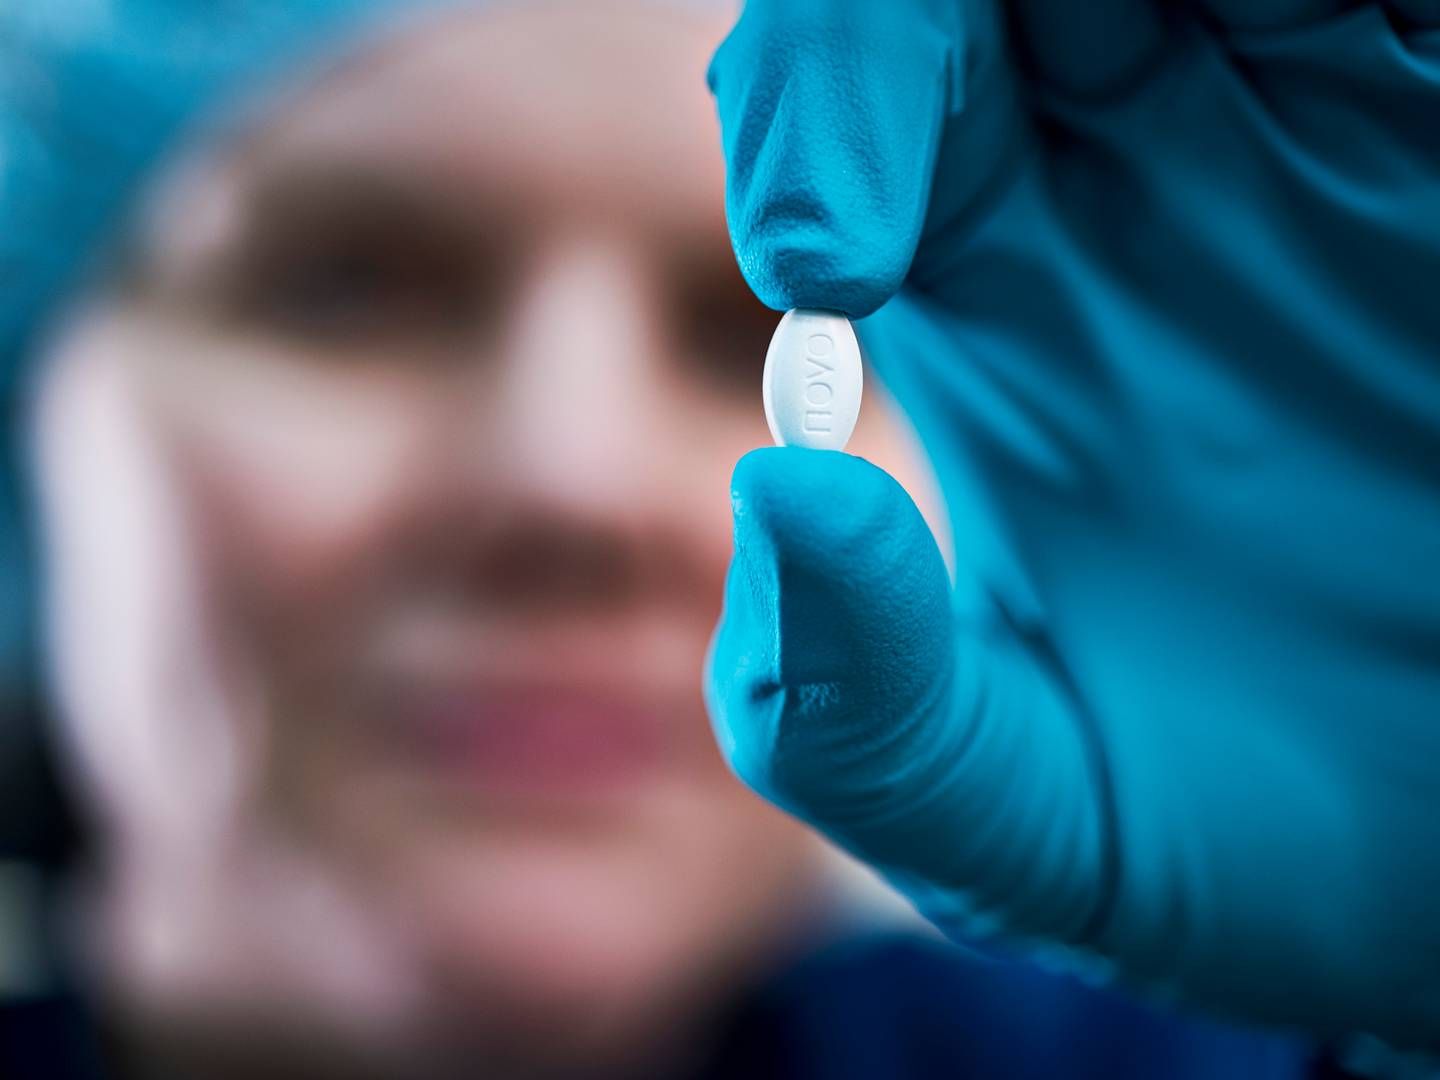 Amerikanske Lexaria Biosciences vil forsøge at forbedre Novo Nordisks tablet Rybelsus mod diabetes. | Foto: Novo Nordisk / Pr